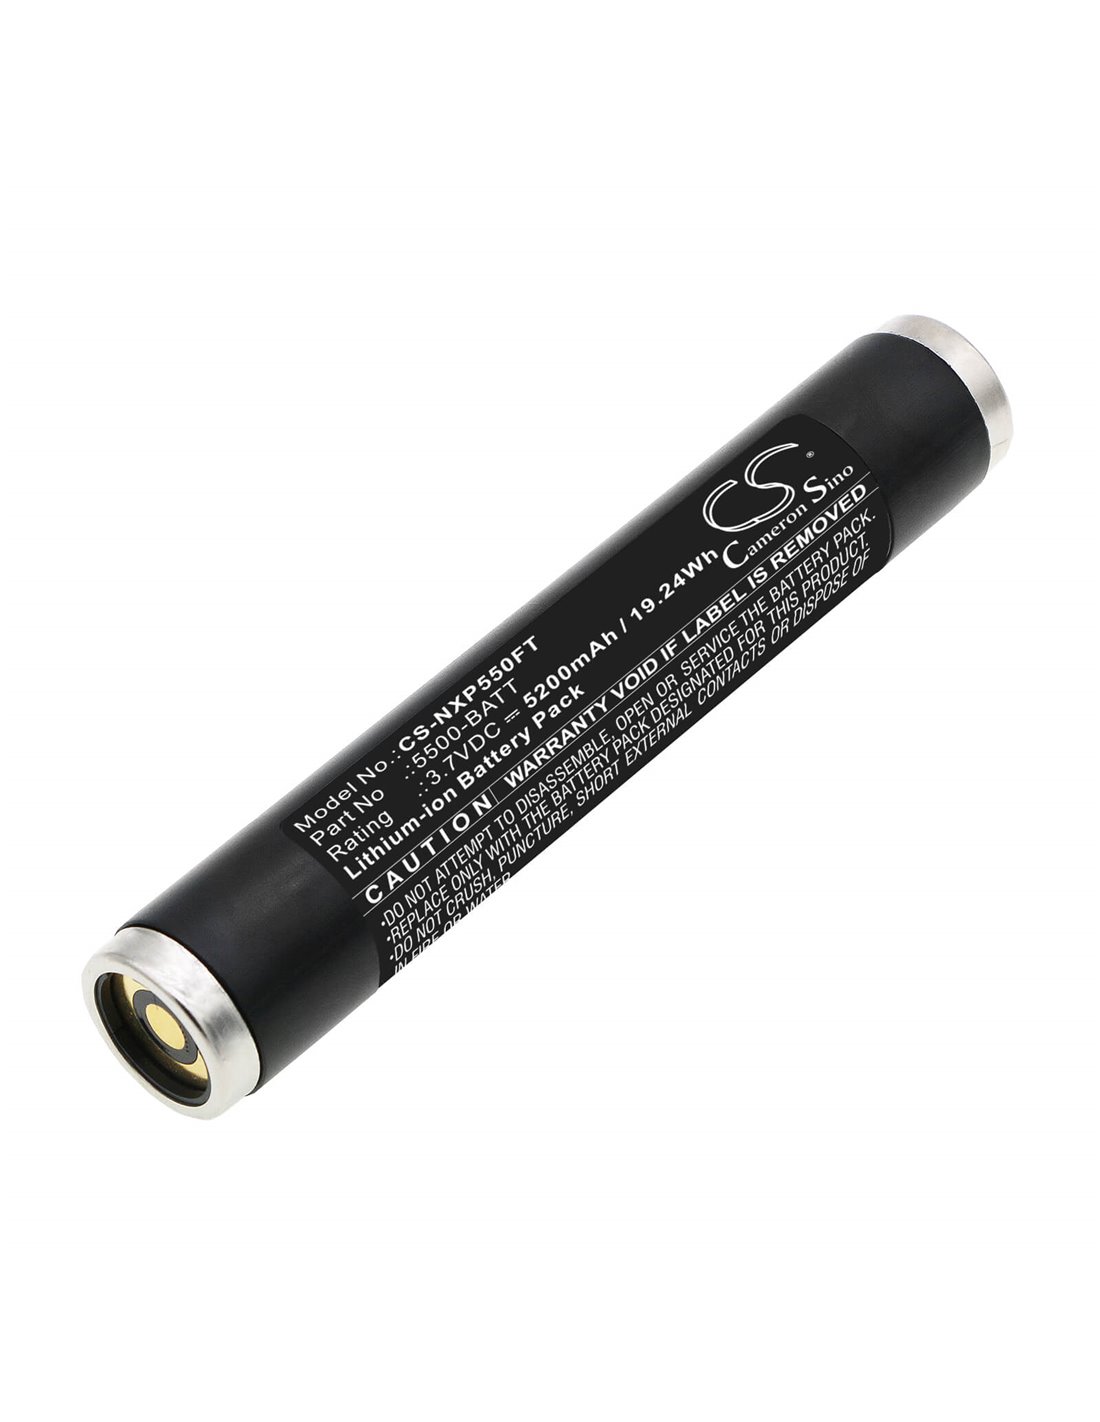 3.7V, Li-ion, 5200mAh, Battery fits Nightstick Xpr-5542gmx, Xpr-5580, Xpr-5581rx, 19.24Wh